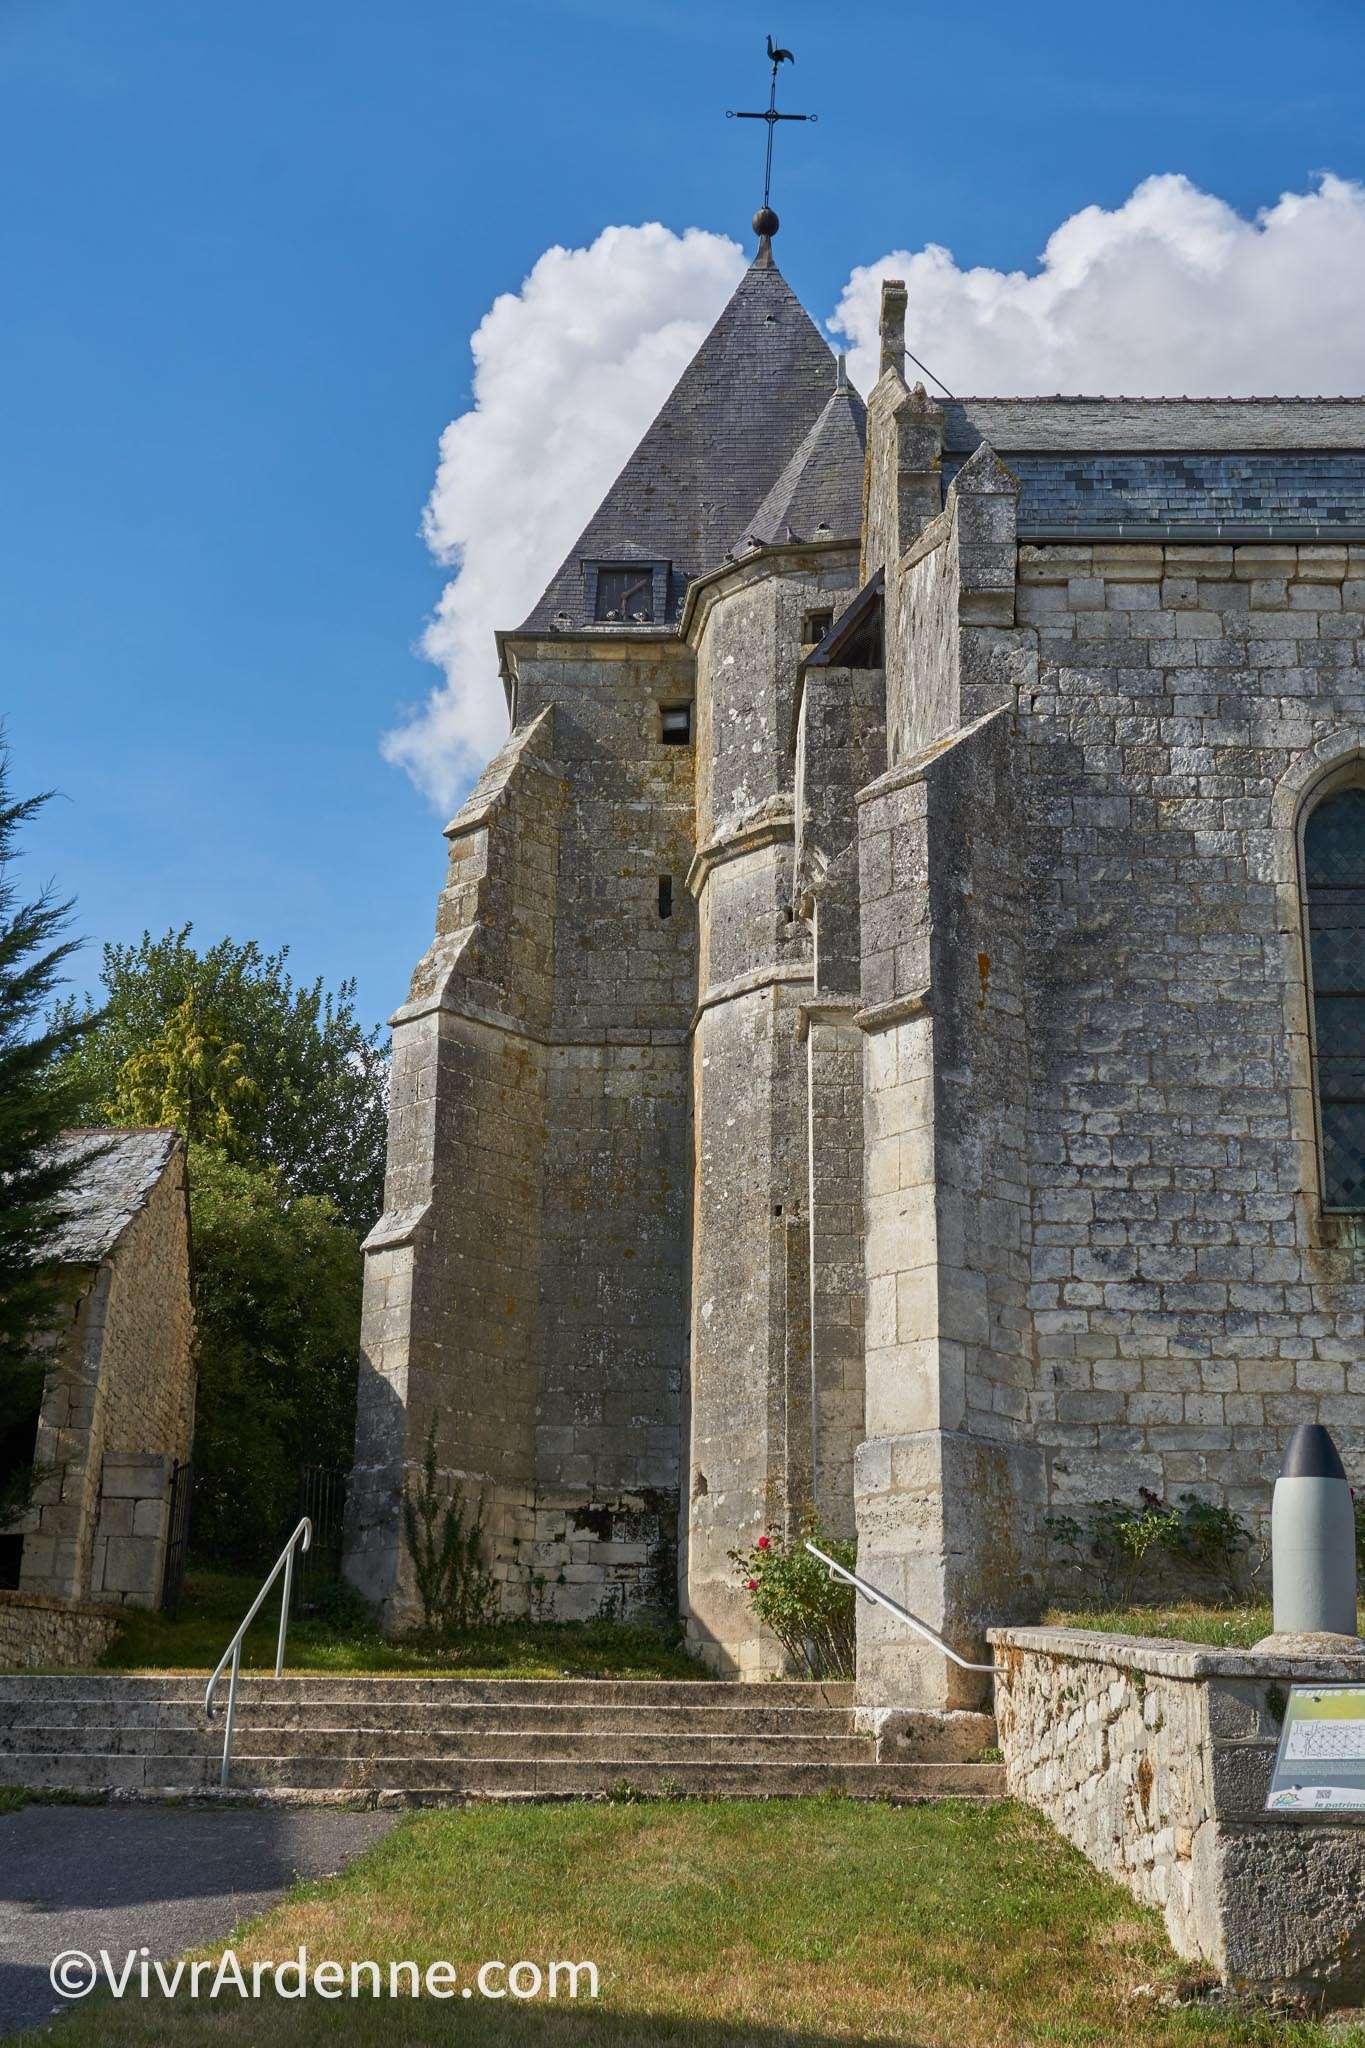 VivrArdenne - Eglises fortifiées de Thiérache